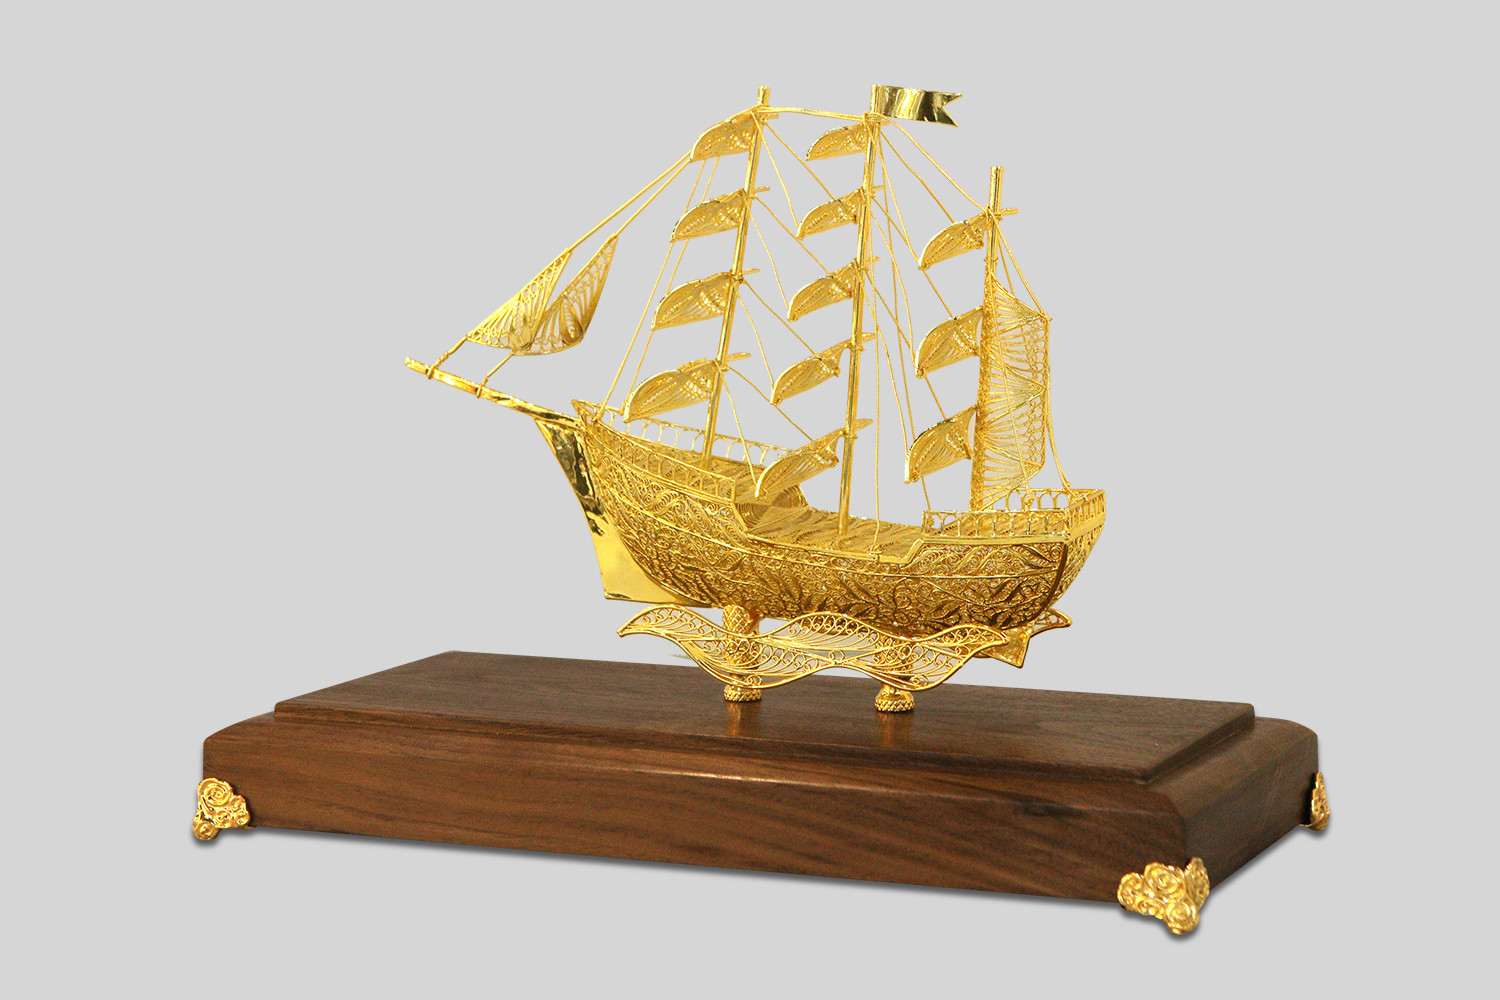 Vật phẩm thuyền buồm là biểu tượng mang lại nhiều giao dịch kinh doanh thành công